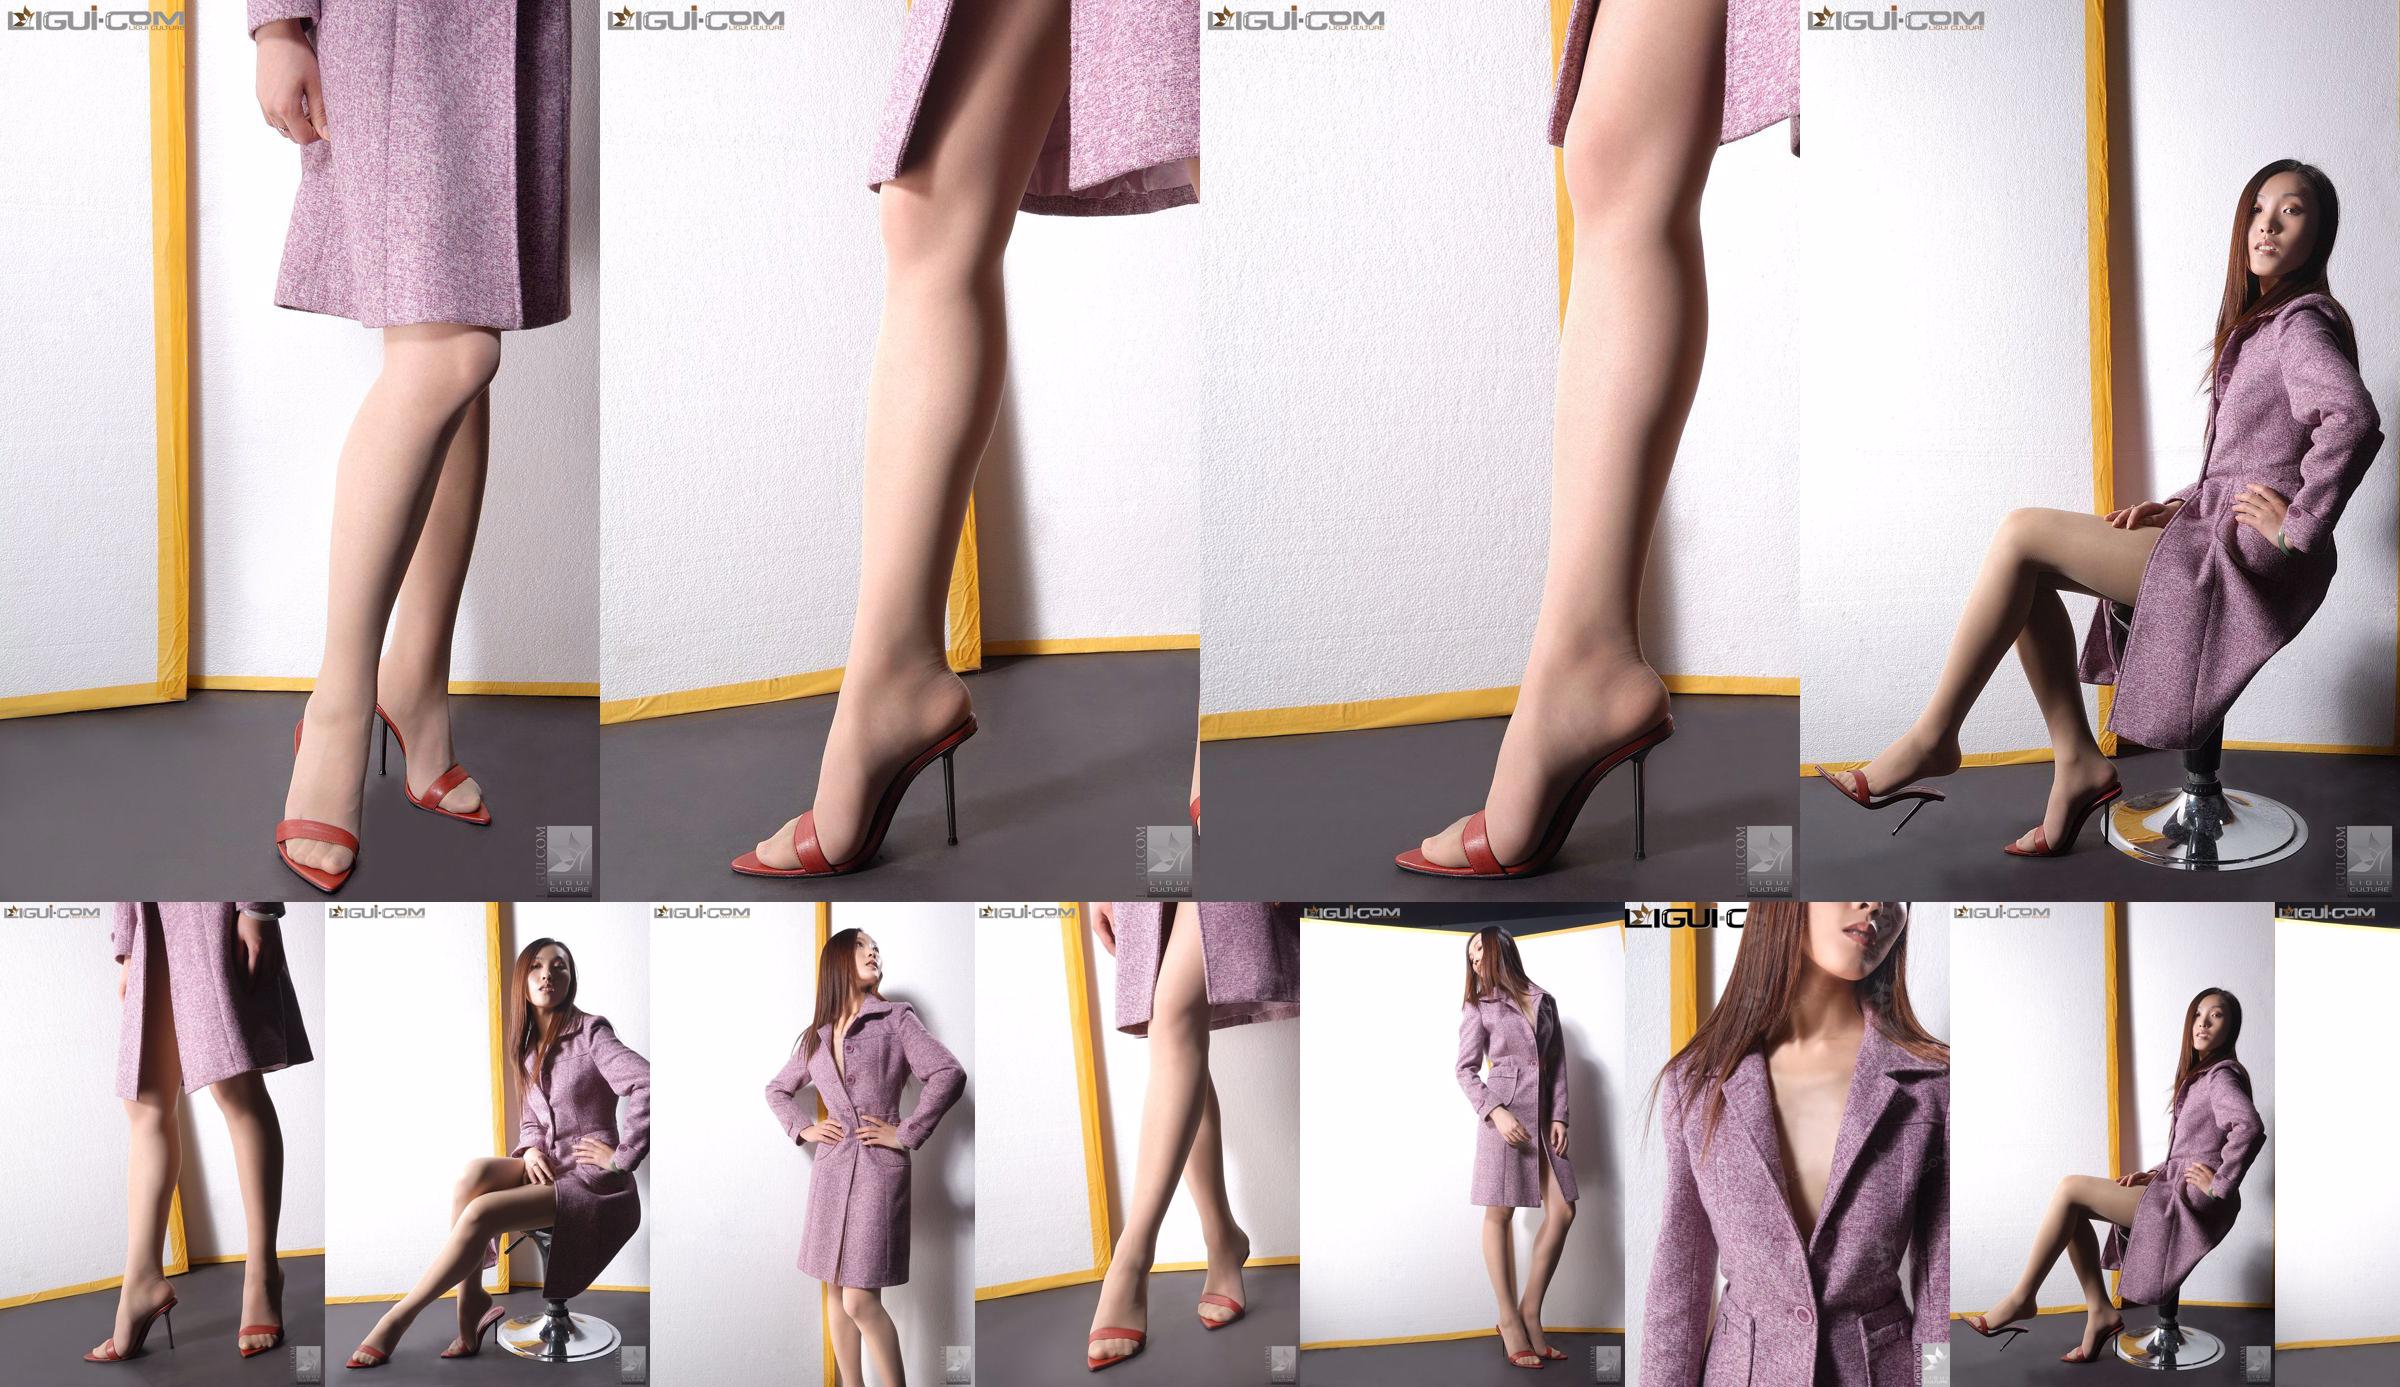 Model Zhang Ai "Eibenmädchen mit hohen Absätzen" [Ligui LiGui] Foto von schönen Beinen und Füßen No.f39a67 Seite 1